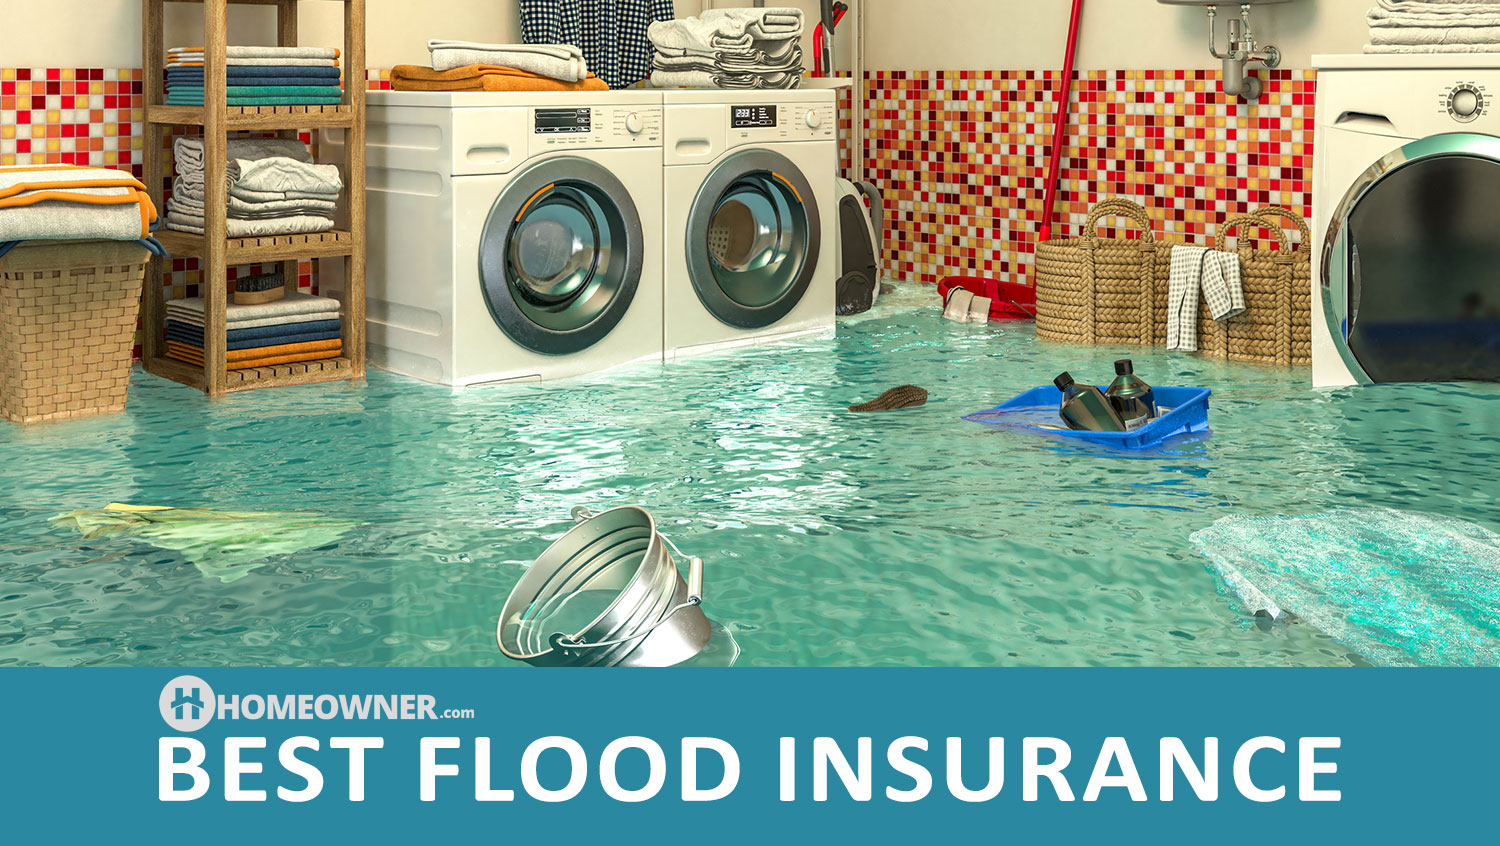 10 Best Flood Insurance Companies in 2023